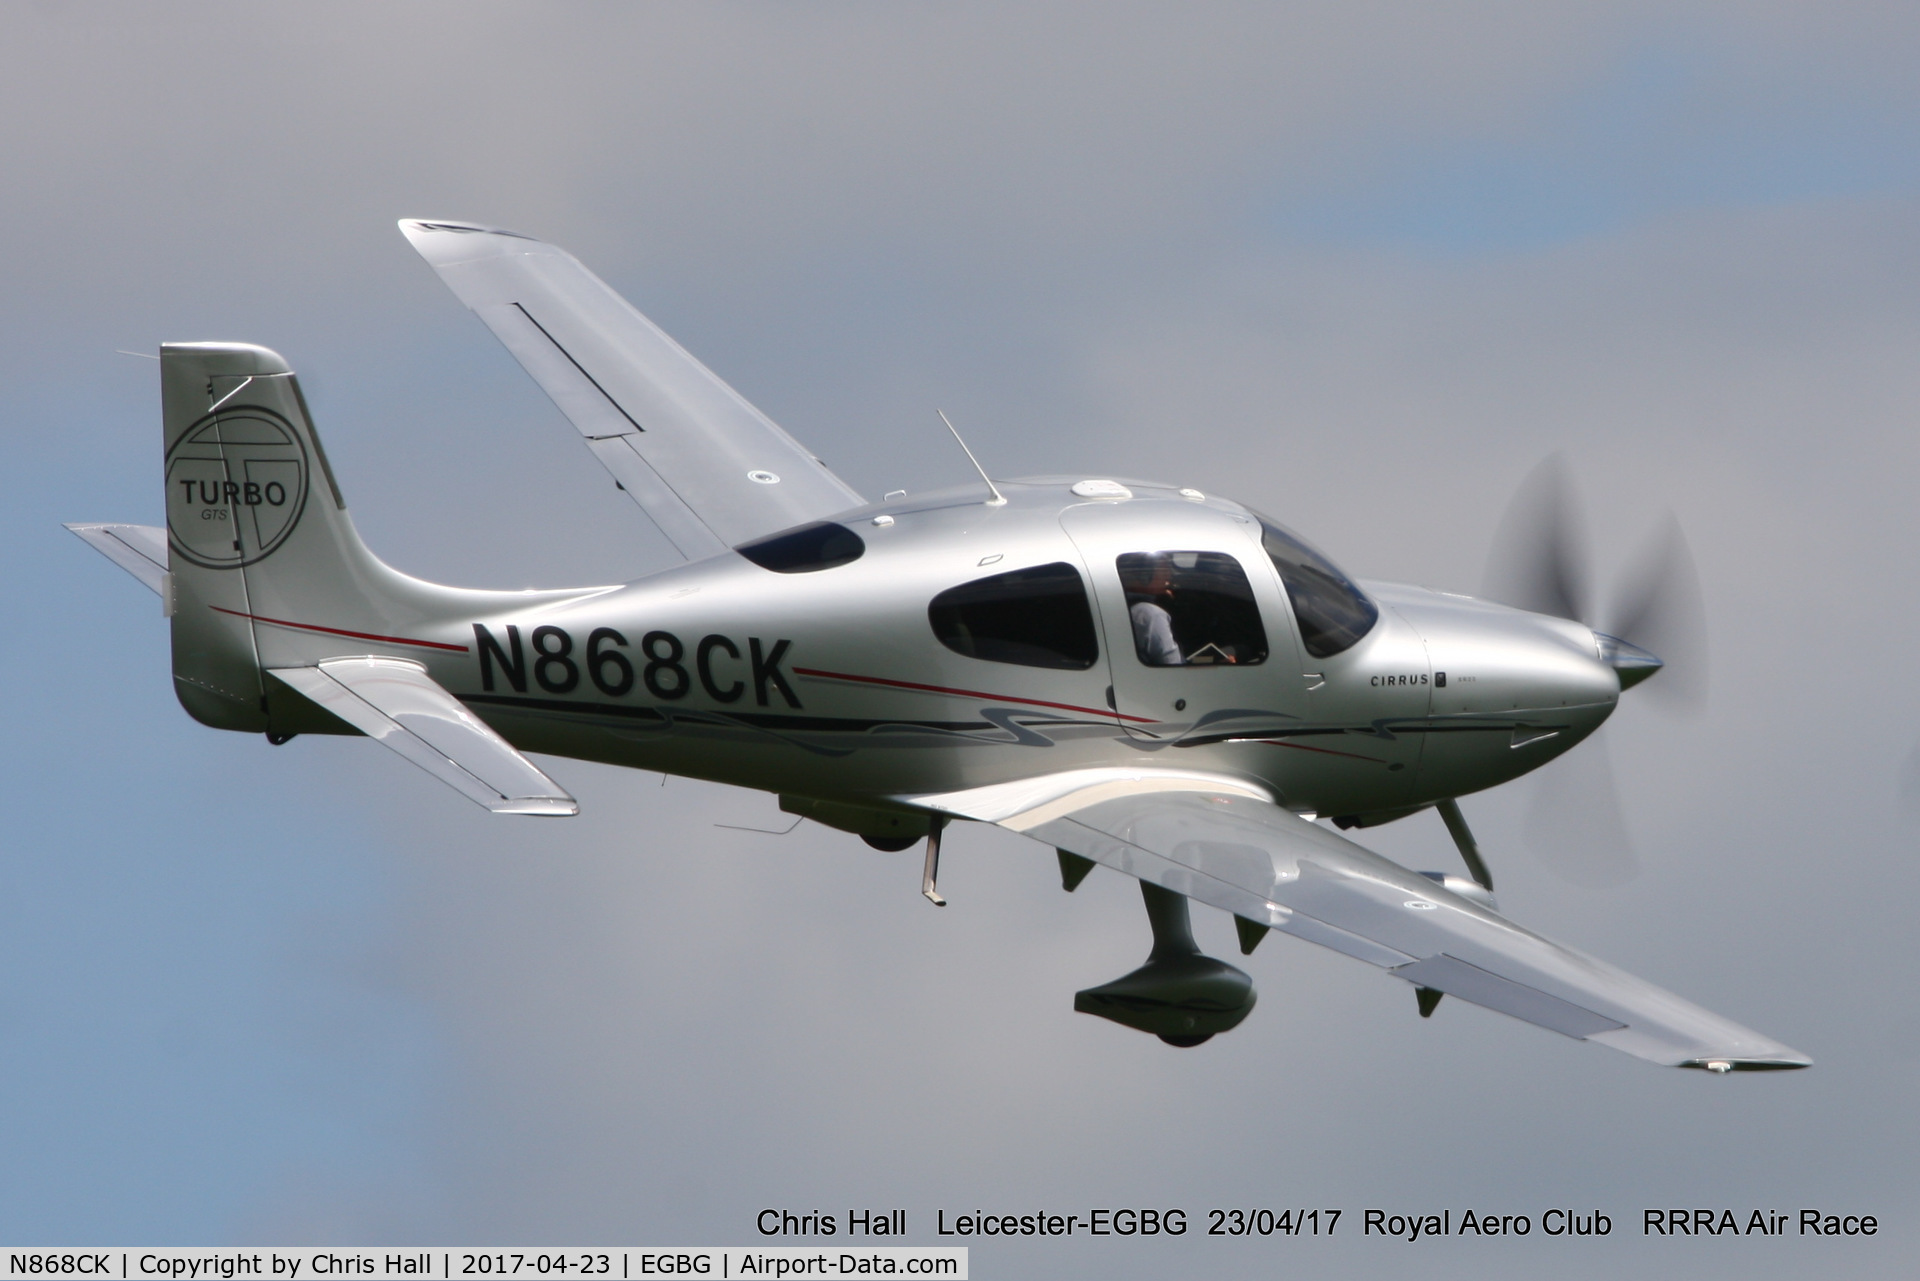 N868CK, 2009 Cirrus SR22T GTS Turbo C/N 3412, Royal Aero Club 3R's air race at Leicester